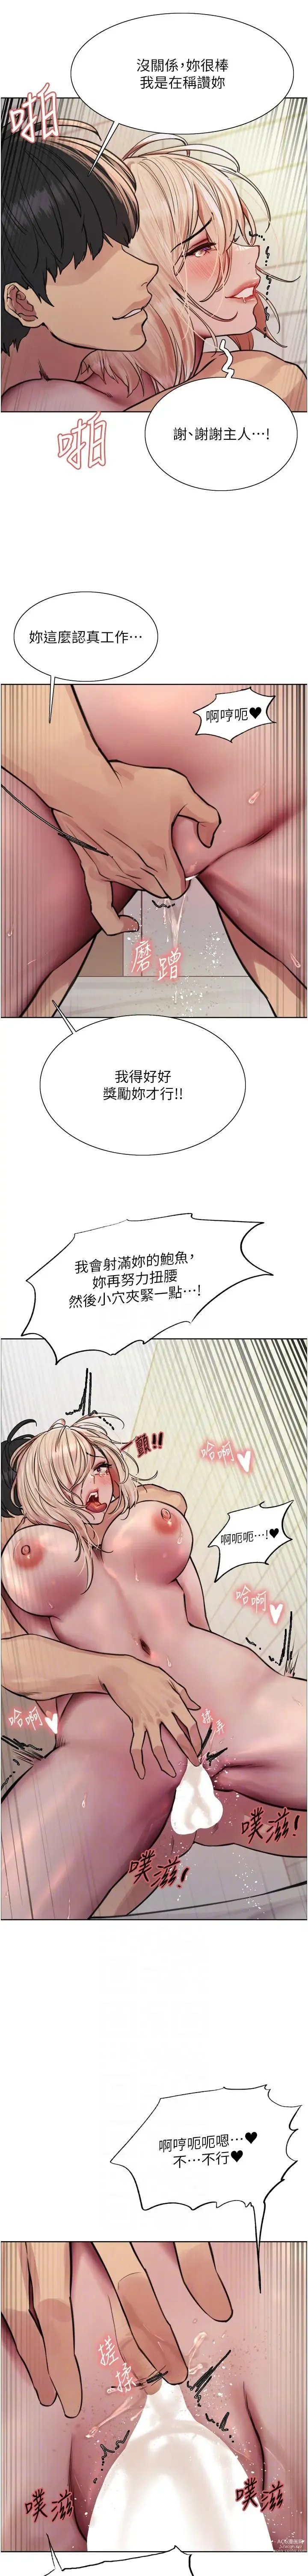 Page 1721 of manga 色轮眼/ Sex Stopwatch